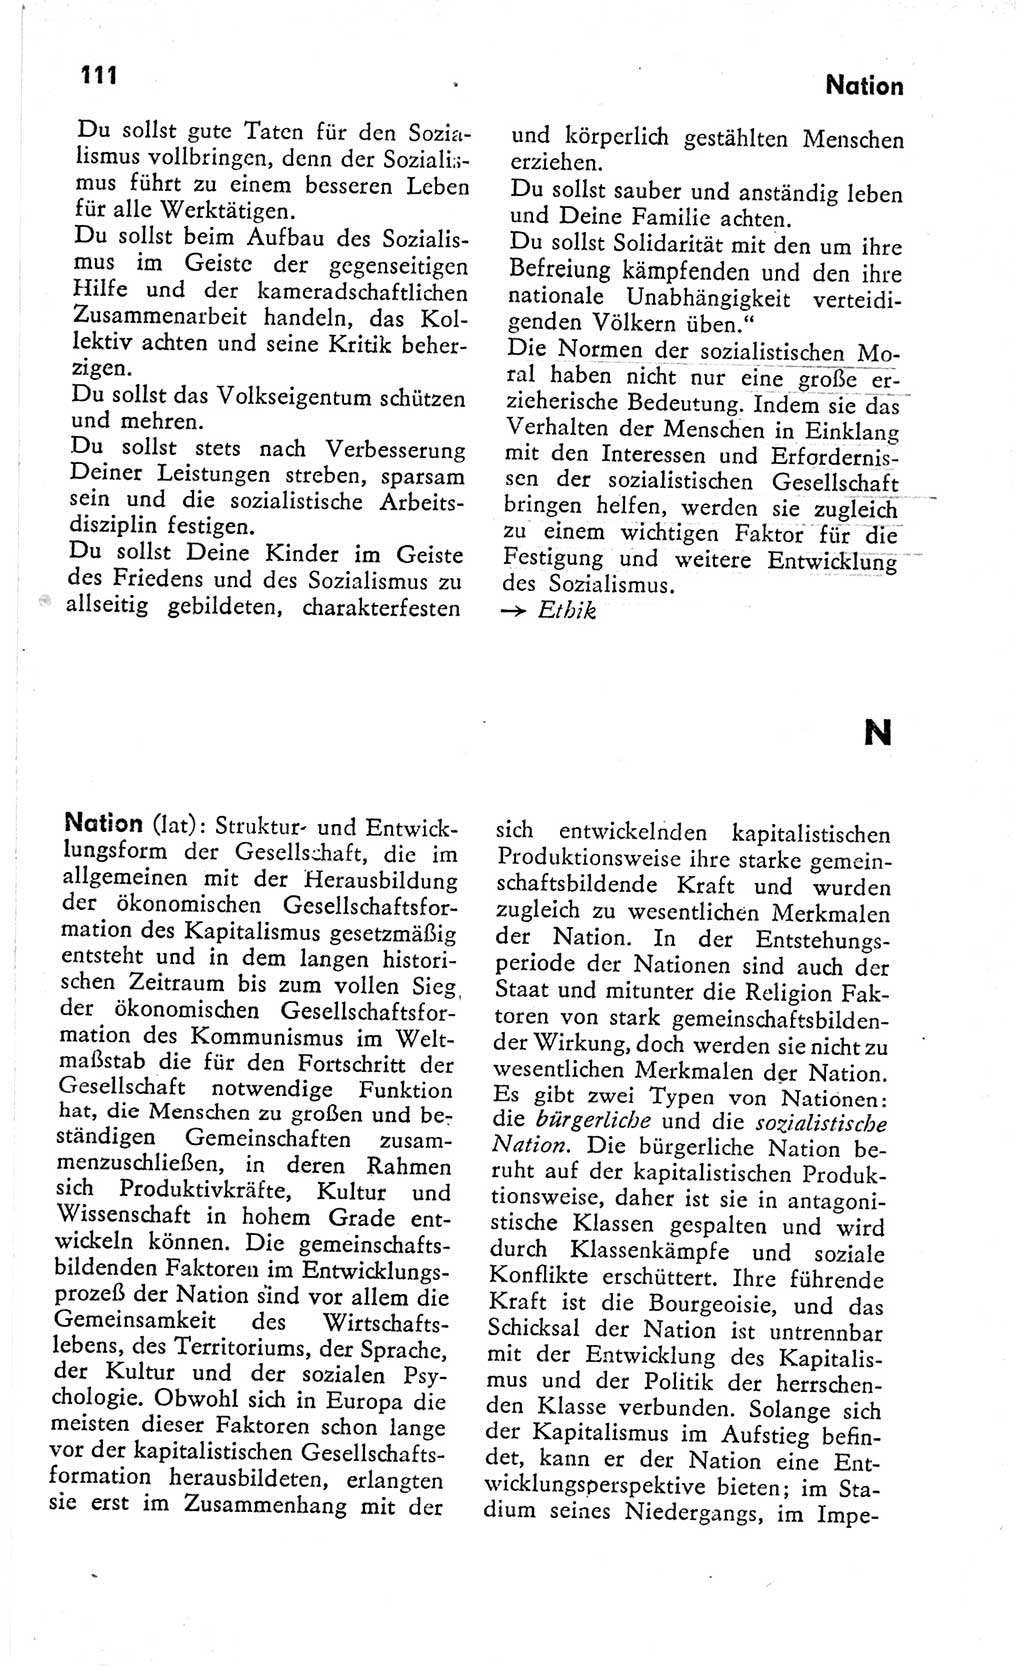 Kleines Wörterbuch der marxistisch-leninistischen Philosophie [Deutsche Demokratische Republik (DDR)] 1966, Seite 111 (Kl. Wb. ML Phil. DDR 1966, S. 111)